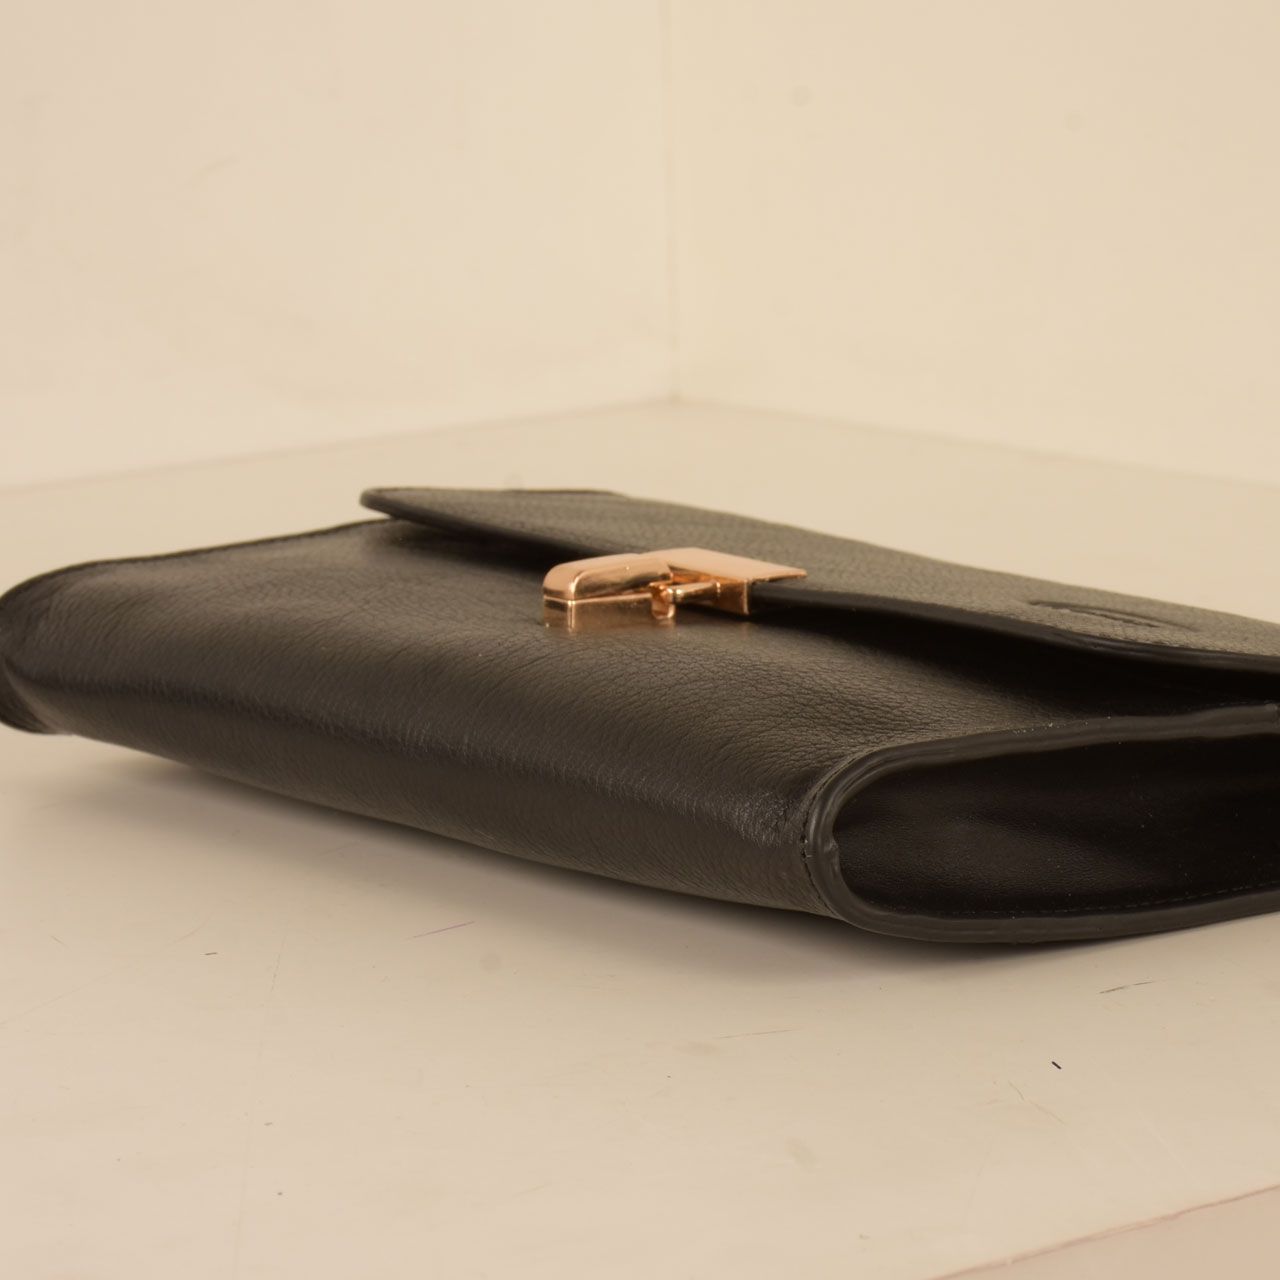 کیف دوشی زنانه پارینه چرم مدل PLV188-12-1510 -  - 41